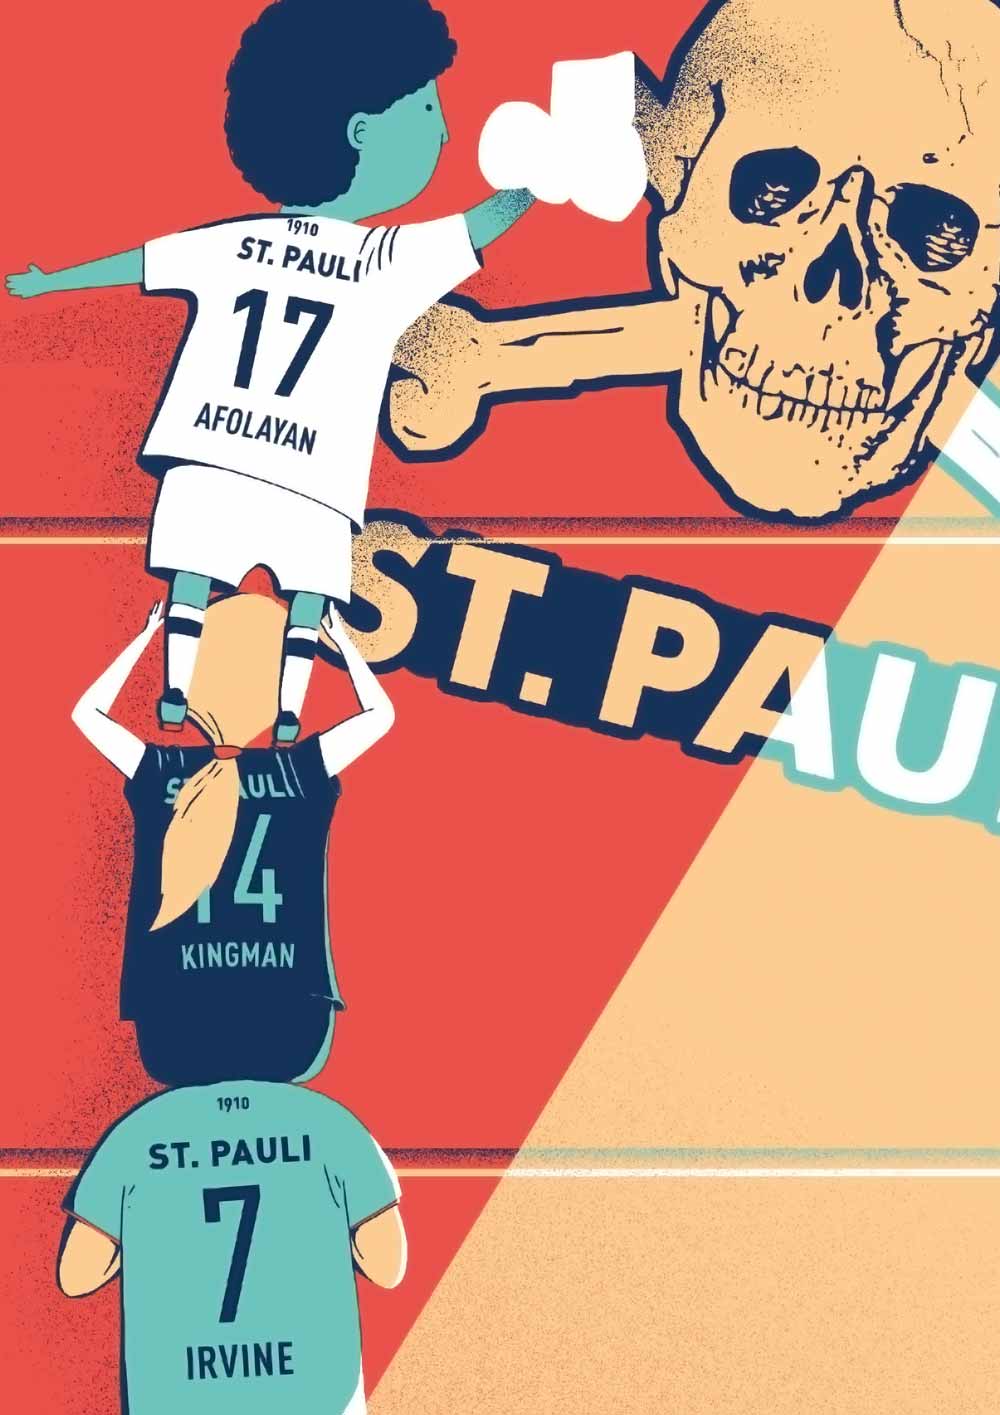 Kunstdruck #7: Print-ciples of FC St. Pauli 